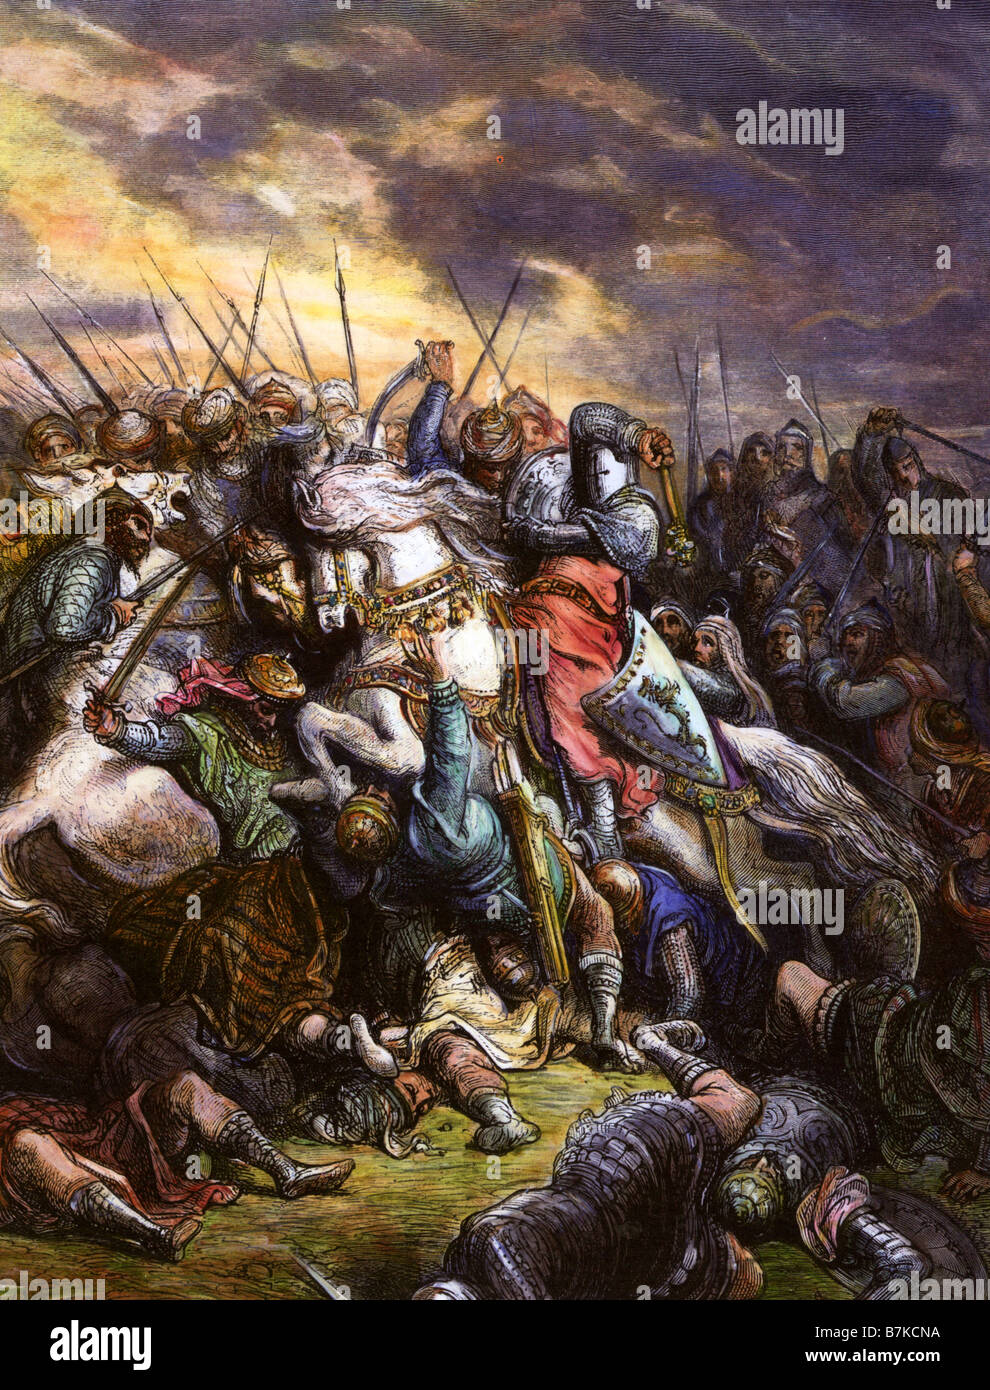 Je RICHARD Richard cœur de lion conduit les Croisés contre l'armée musulmane de Saladin à la bataille d'Arsuf en septembre 1191 Banque D'Images